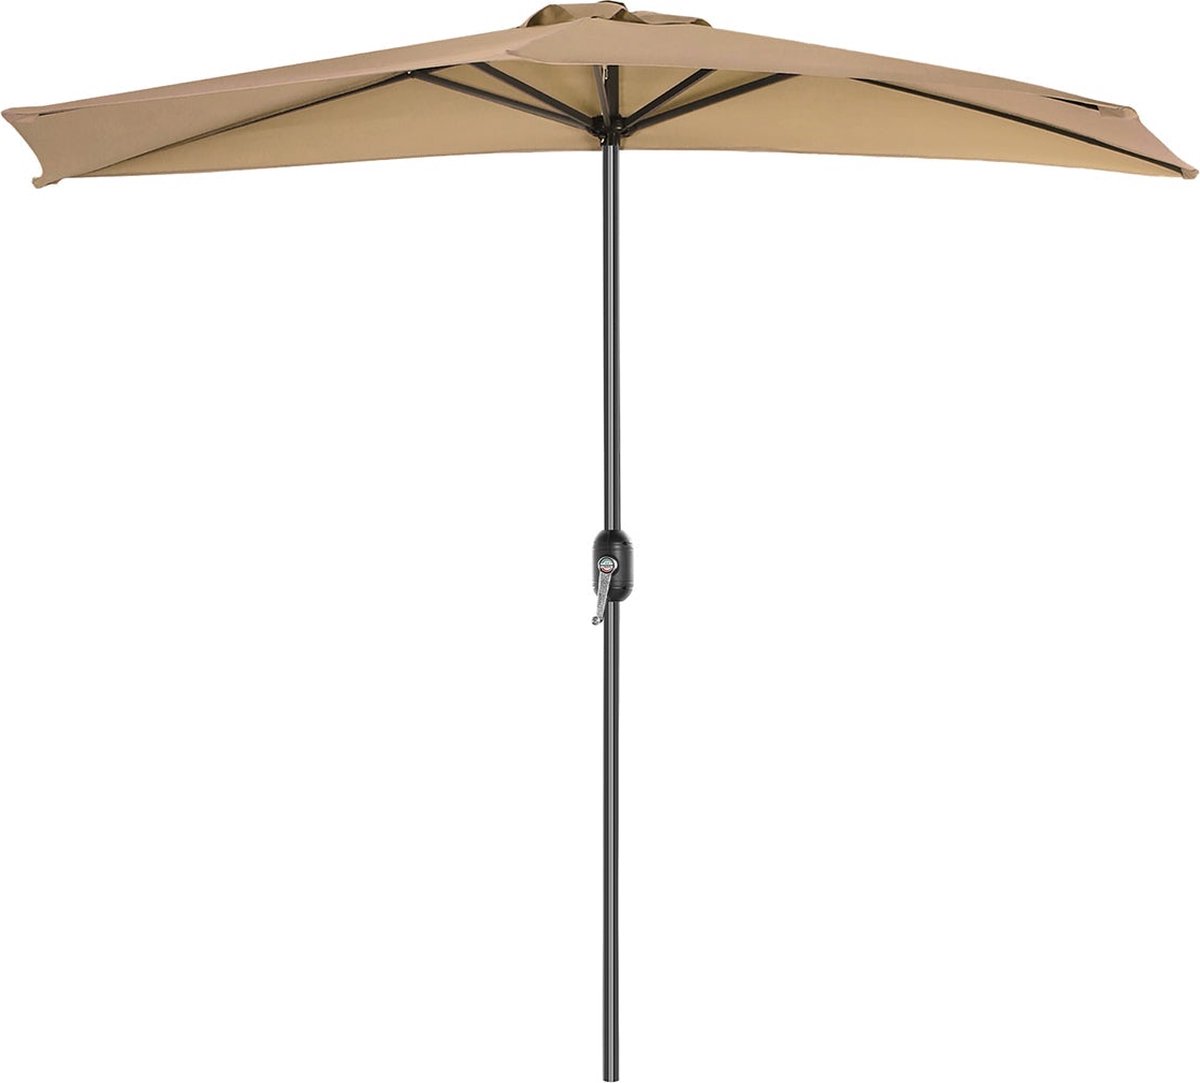 Parasol - Zonnescherm - Terras parasol - Balkonscherm - Taupe